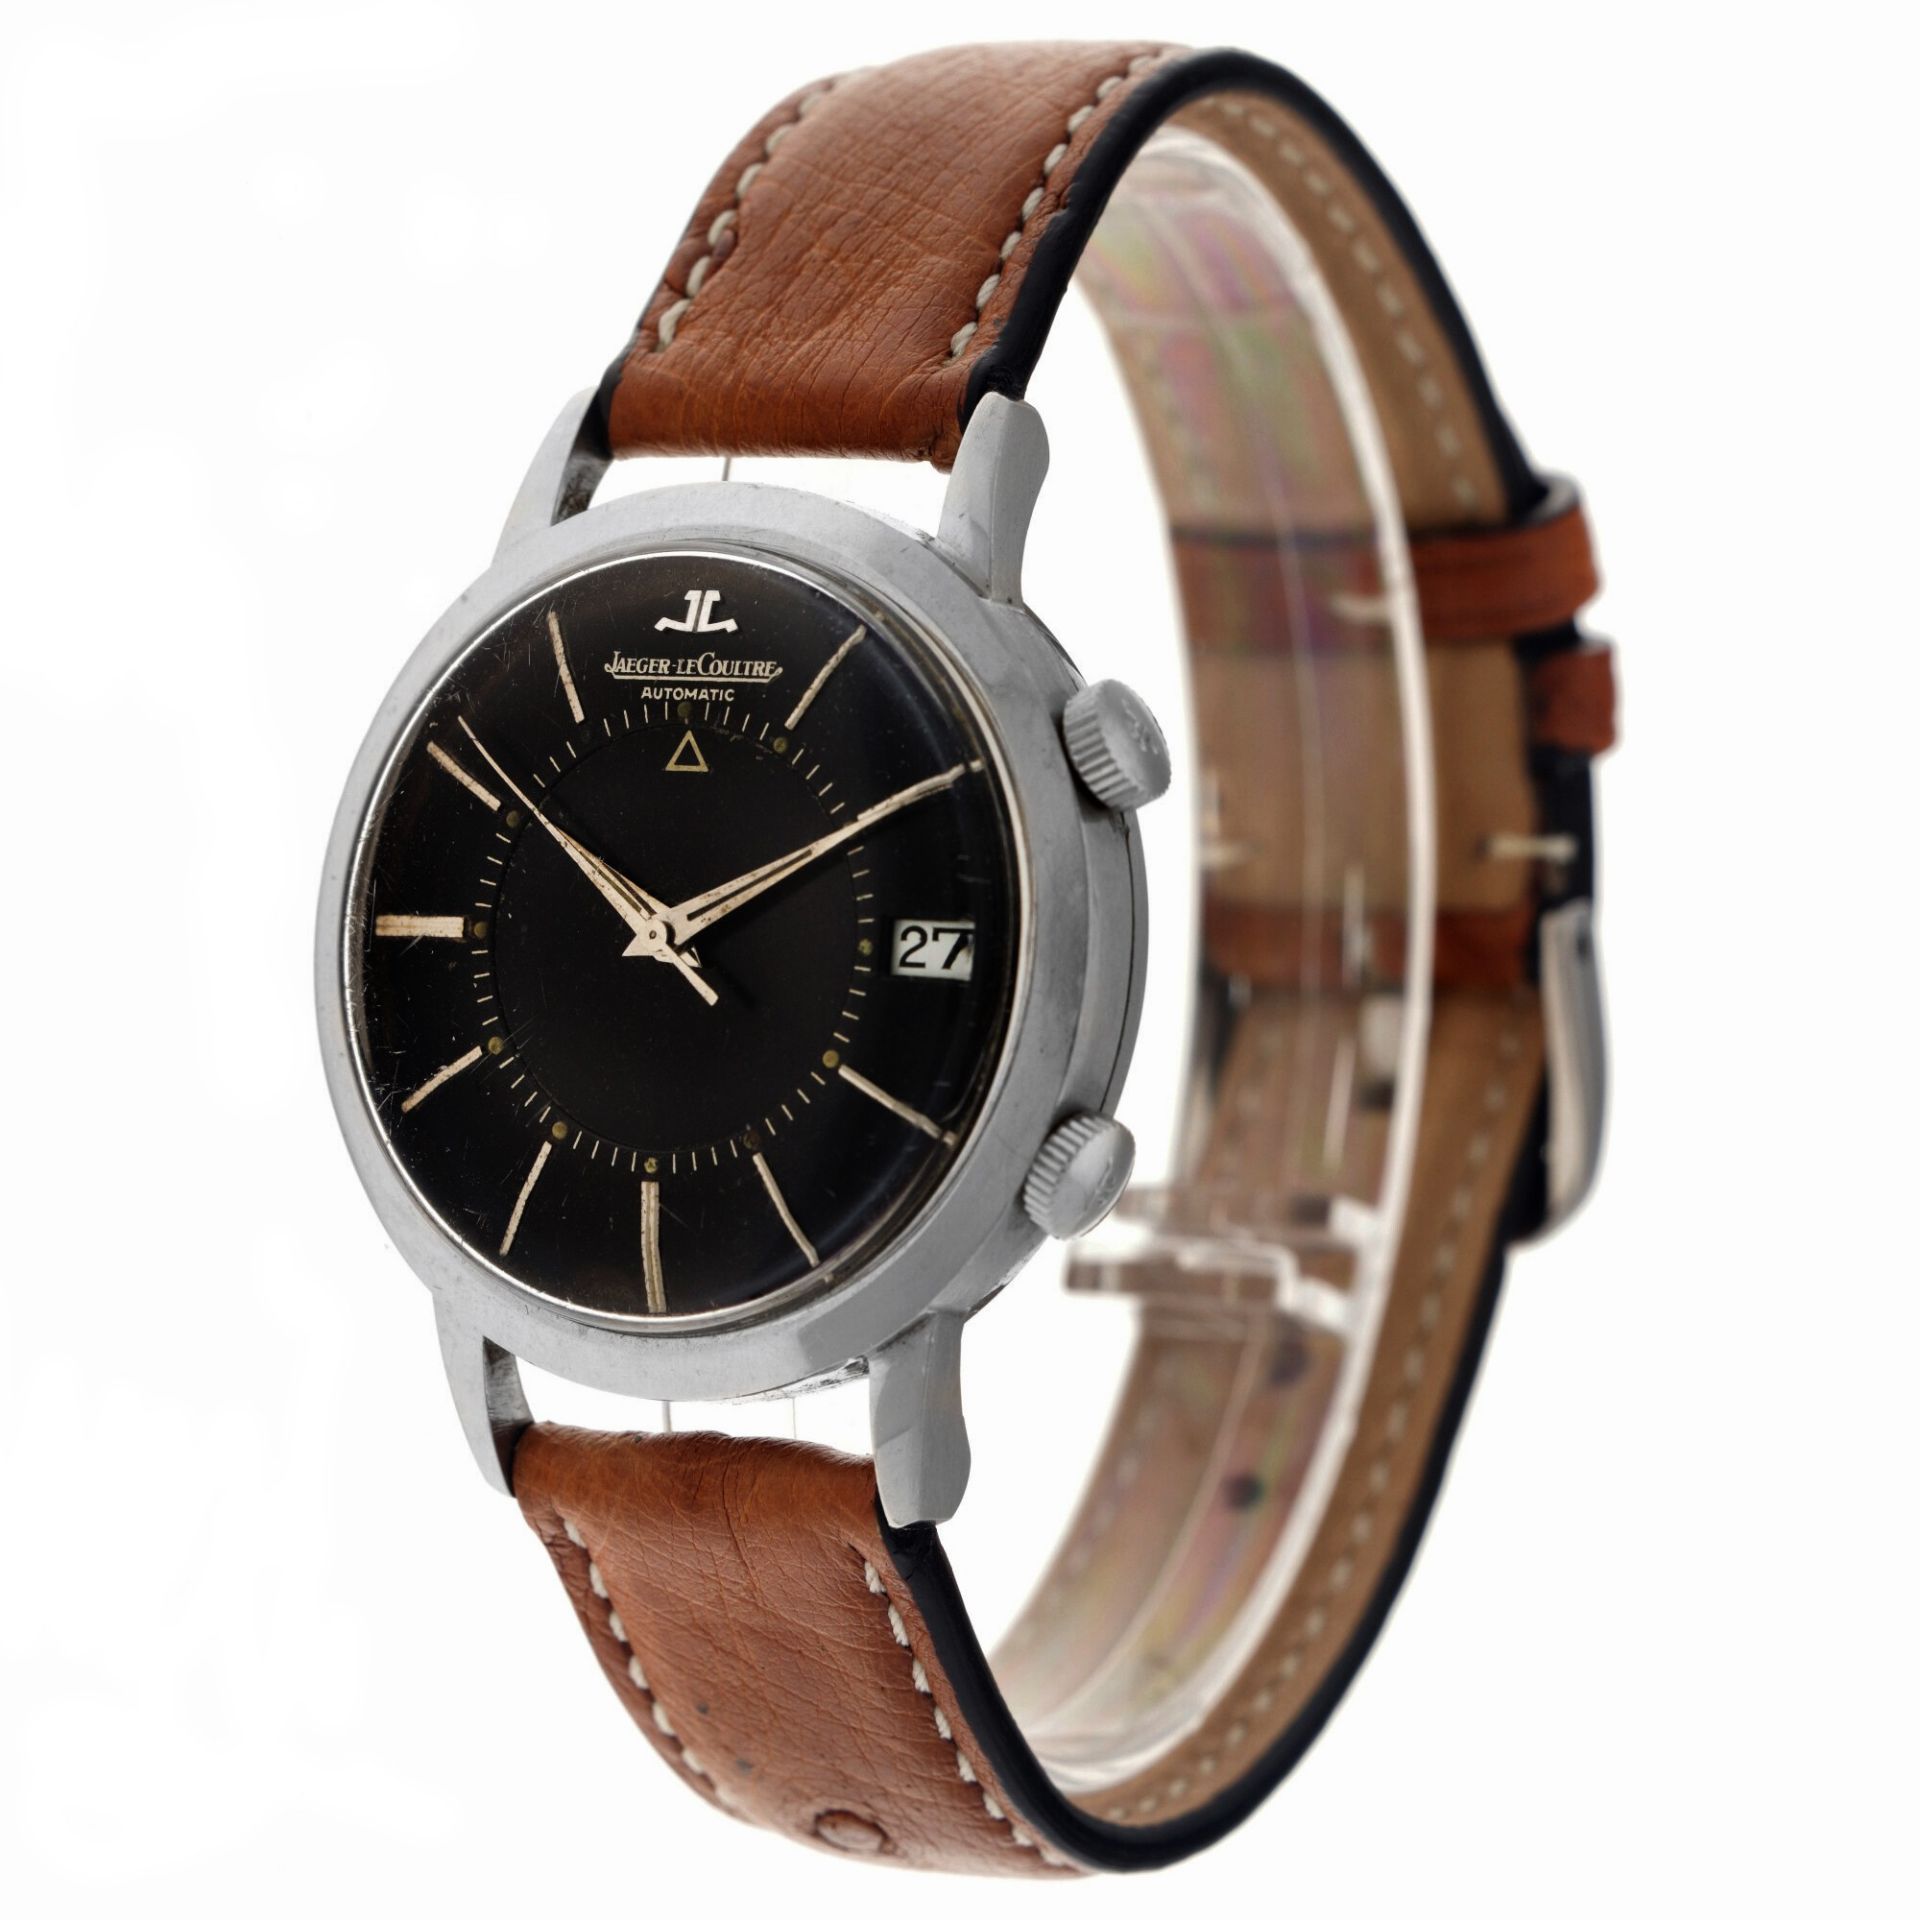 Jaeger-LeCoultre Memovox E855 - Men's wristwatch. - Image 2 of 5